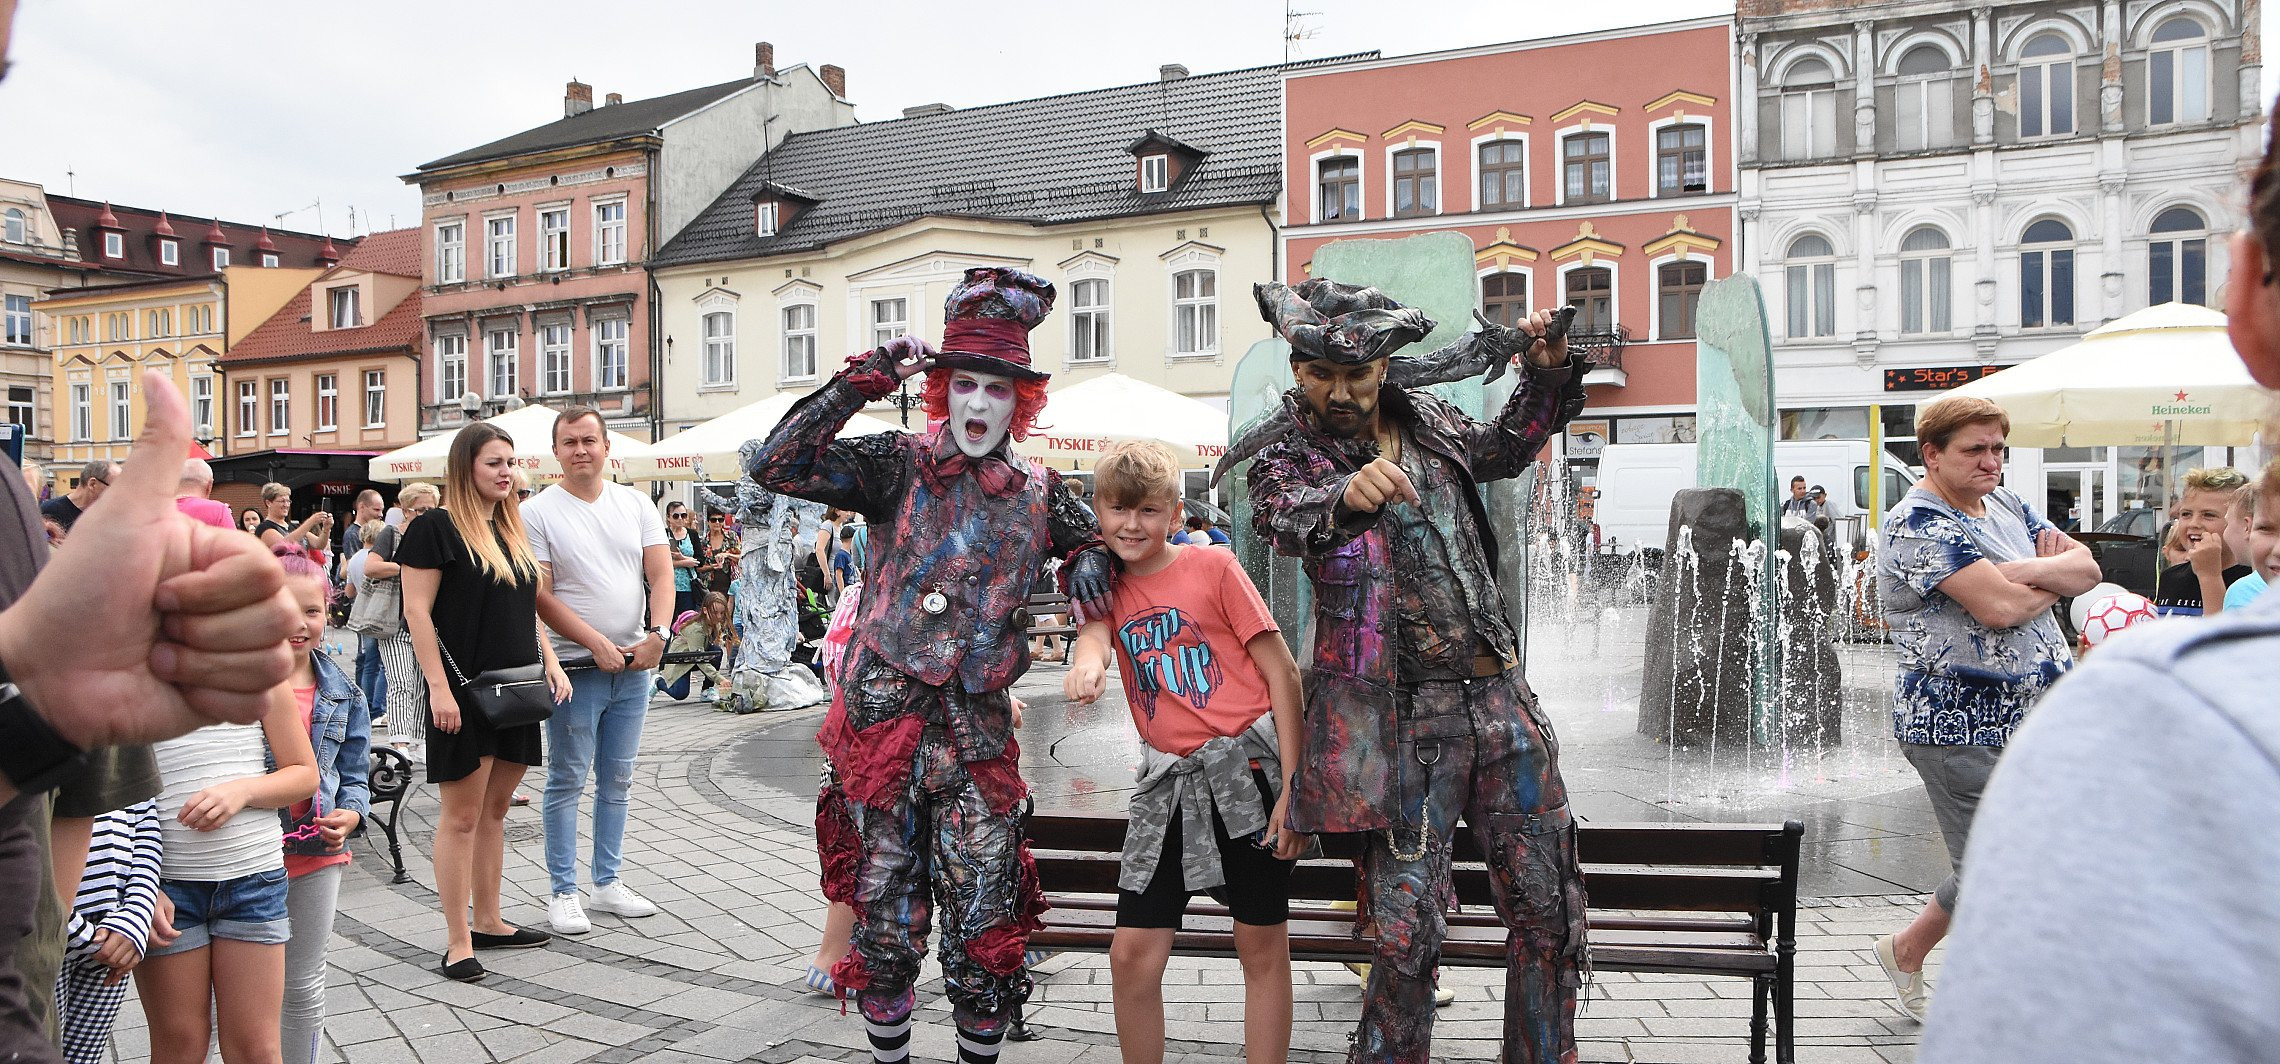 Inowrocław - Moc atrakcji podczas czwartego Ino Art Festiwal